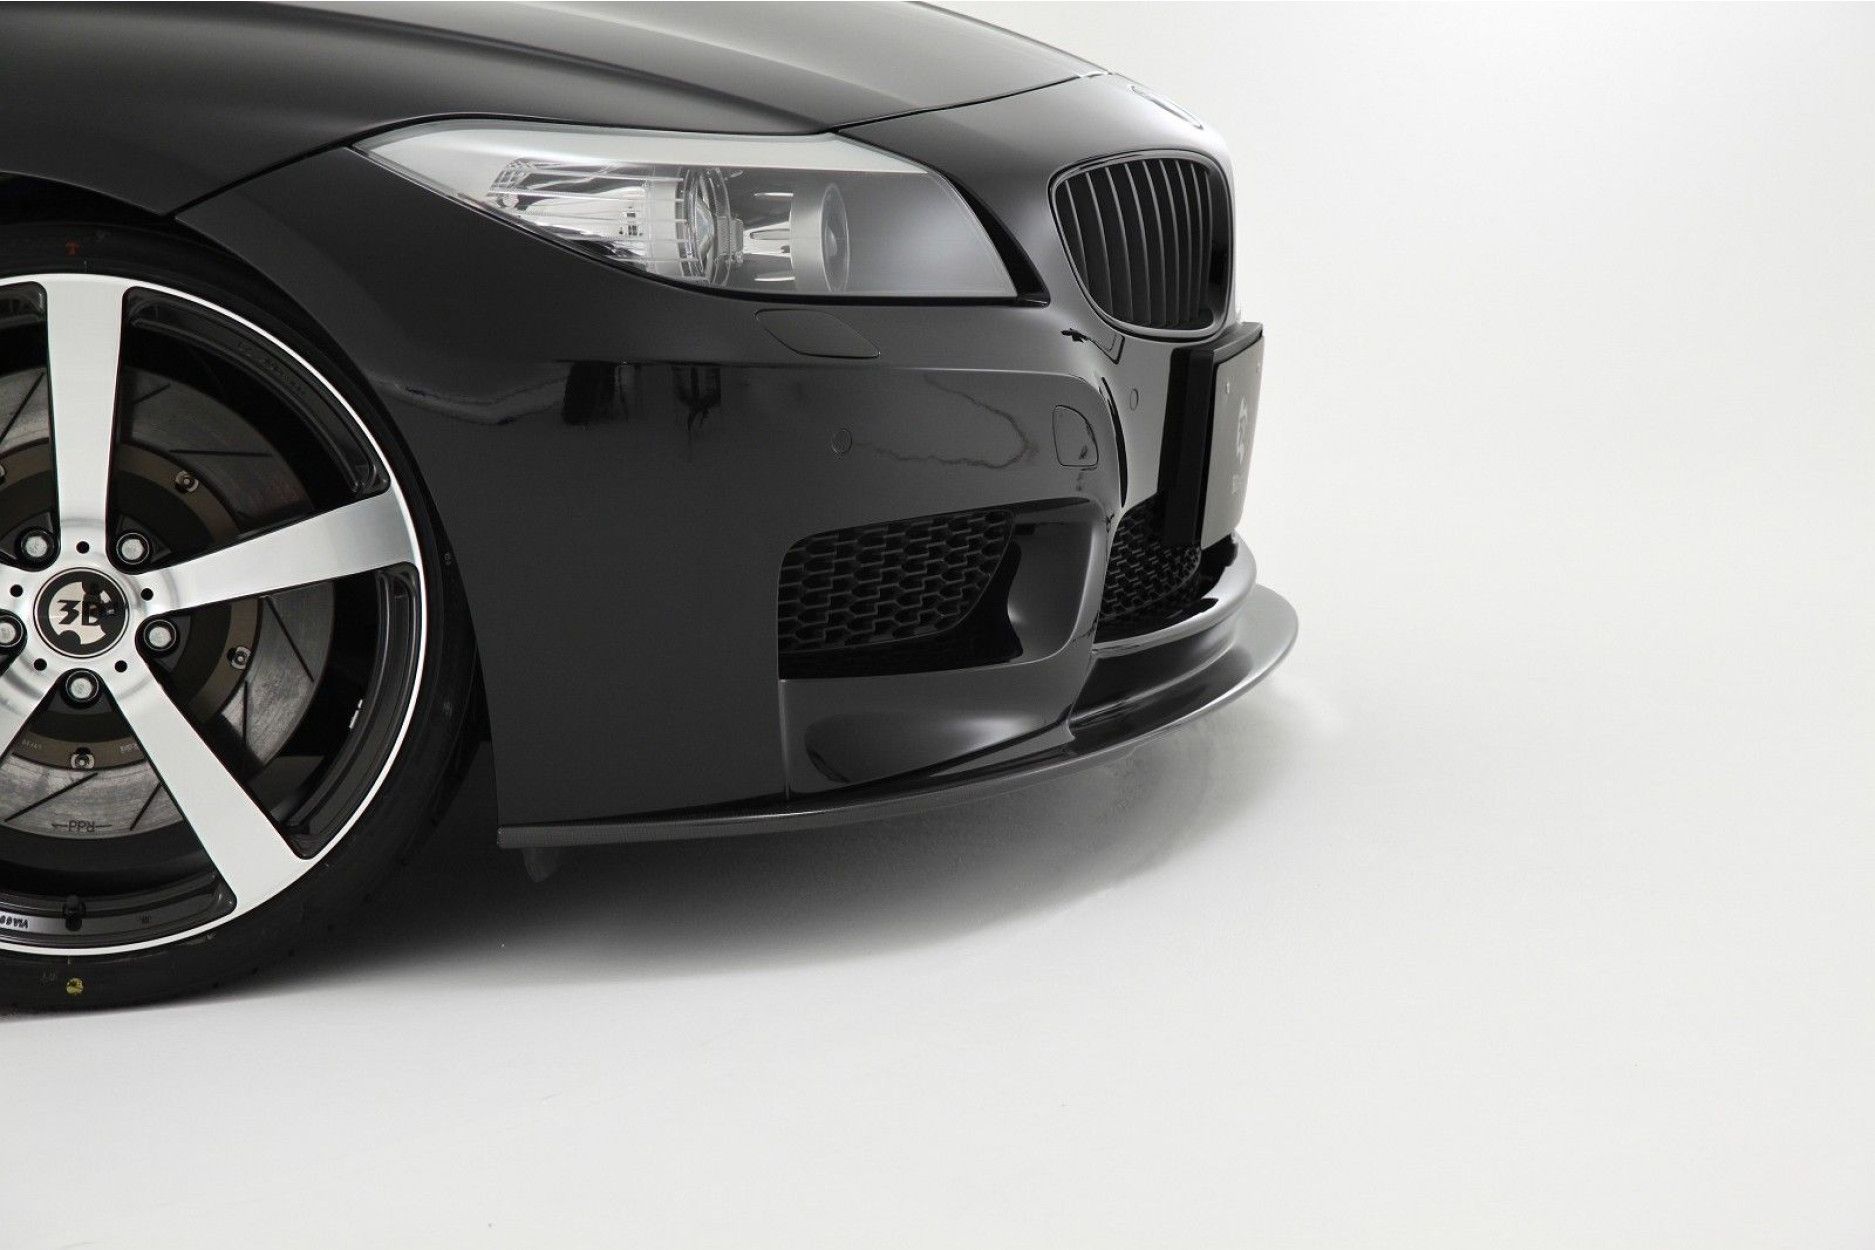 Kaufe M Carbon faser Rückspiegel Kappen Flügel Seite Spiegel Abdeckung Für  BMW E89 Z4 Cabrio 2009-2016 Auto Zubehör glänzend